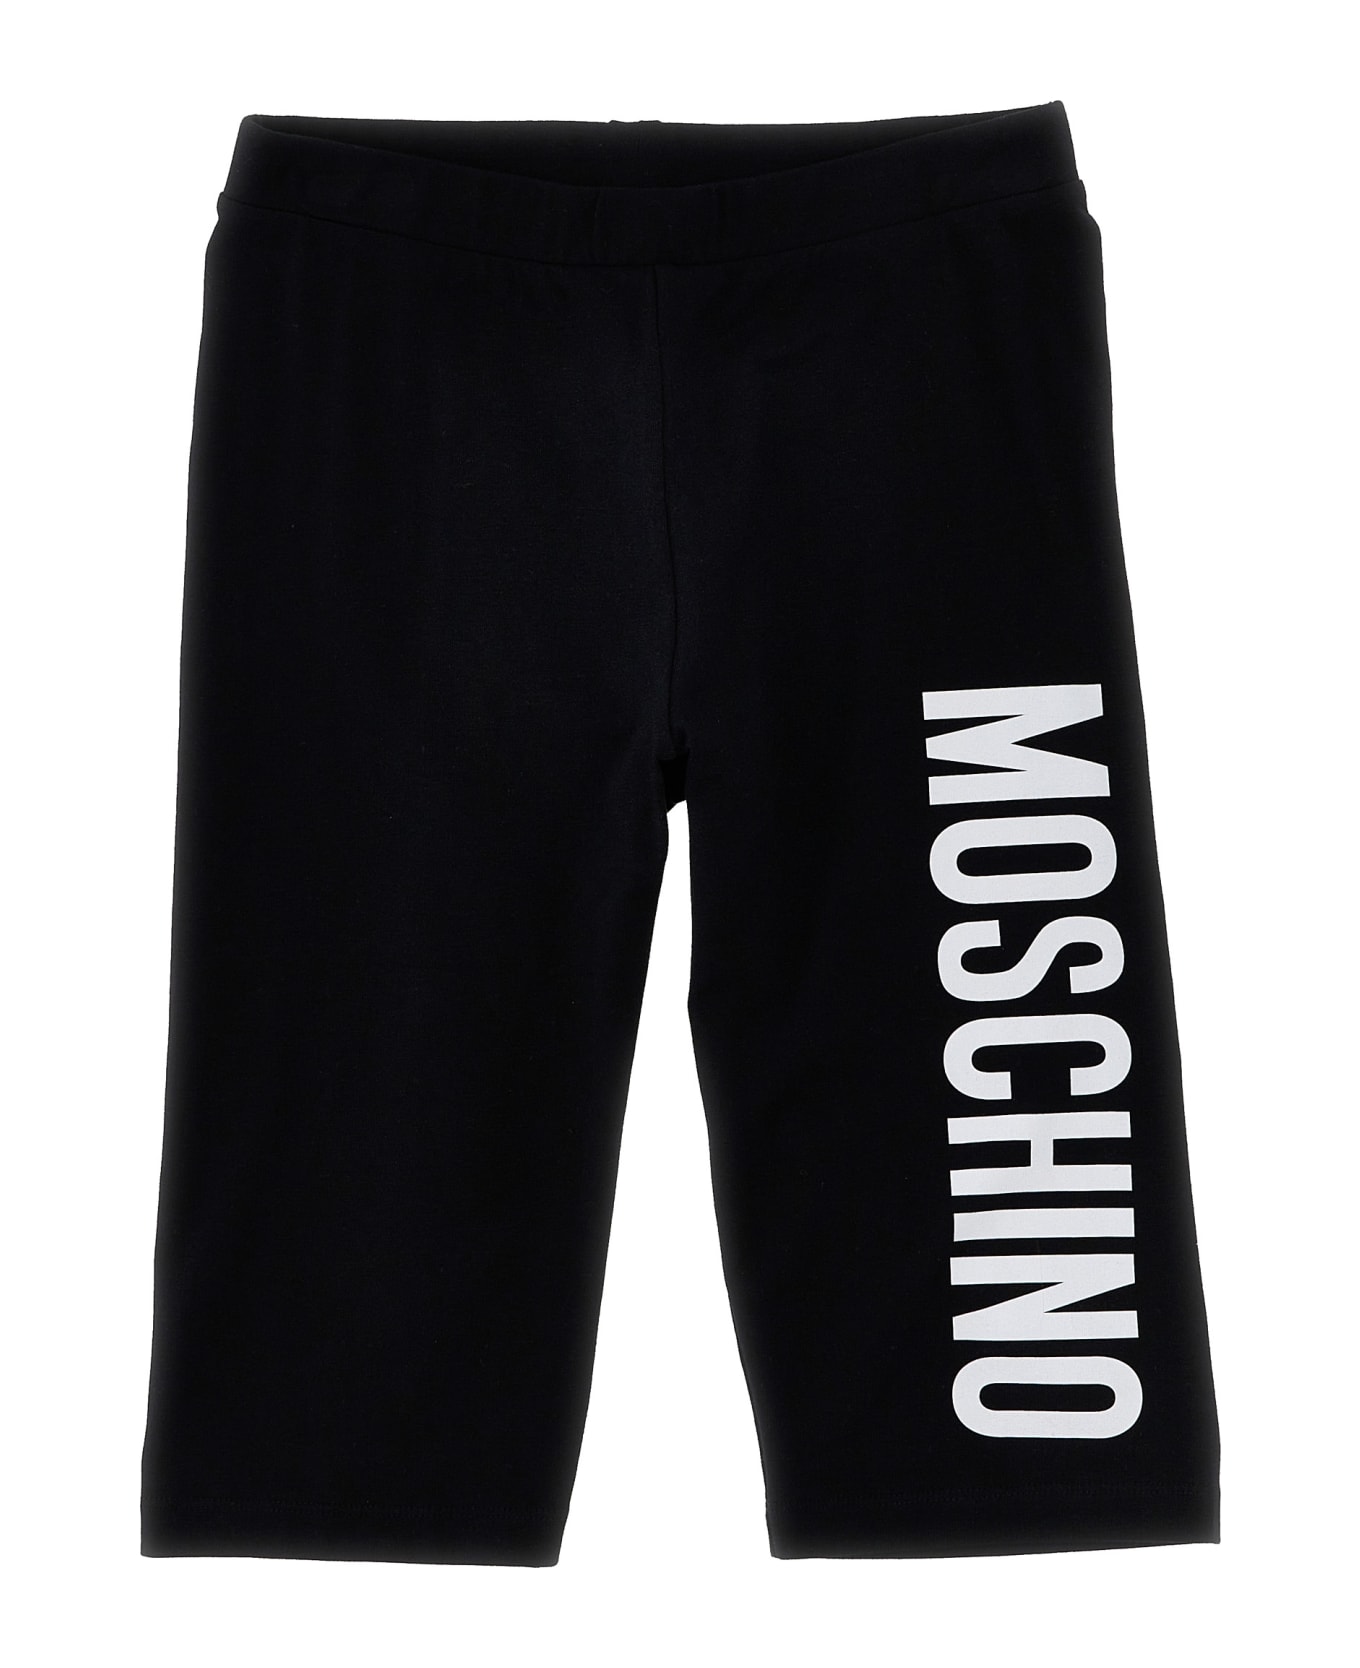 Moschino Logo Print T-shirt + Leggings Set - Pink